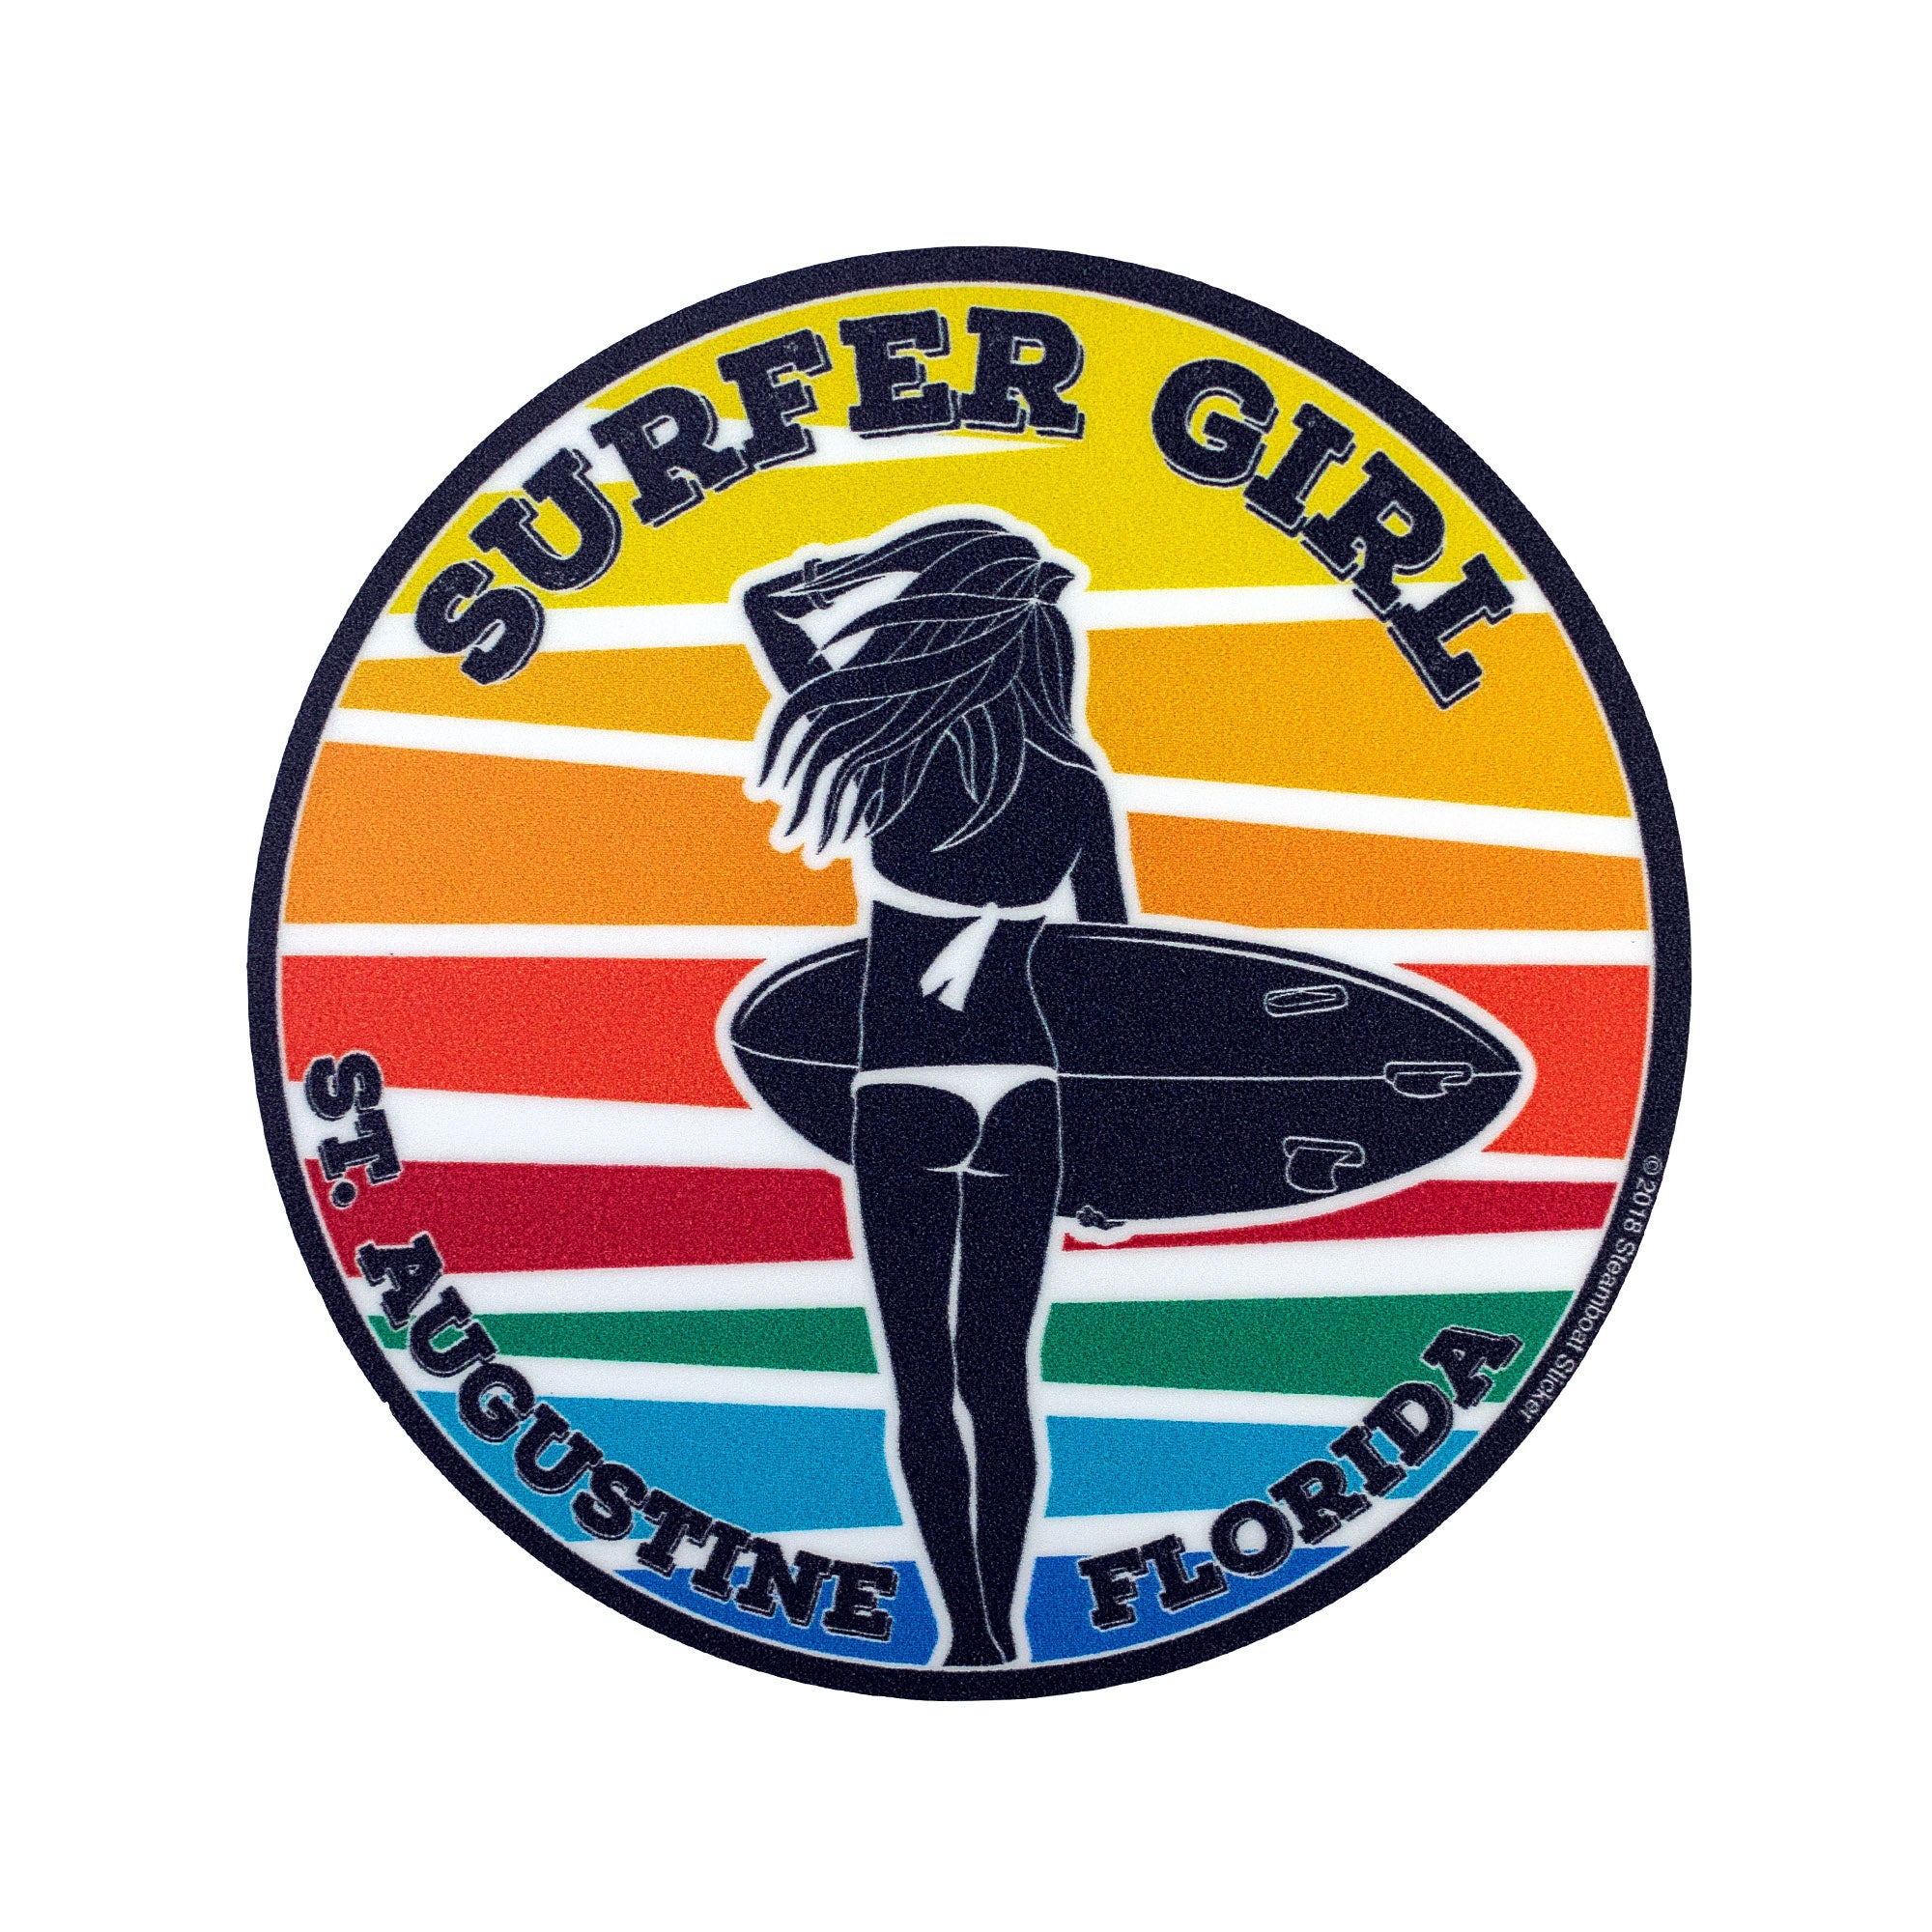 Surf Station Surfer Girl Sticker